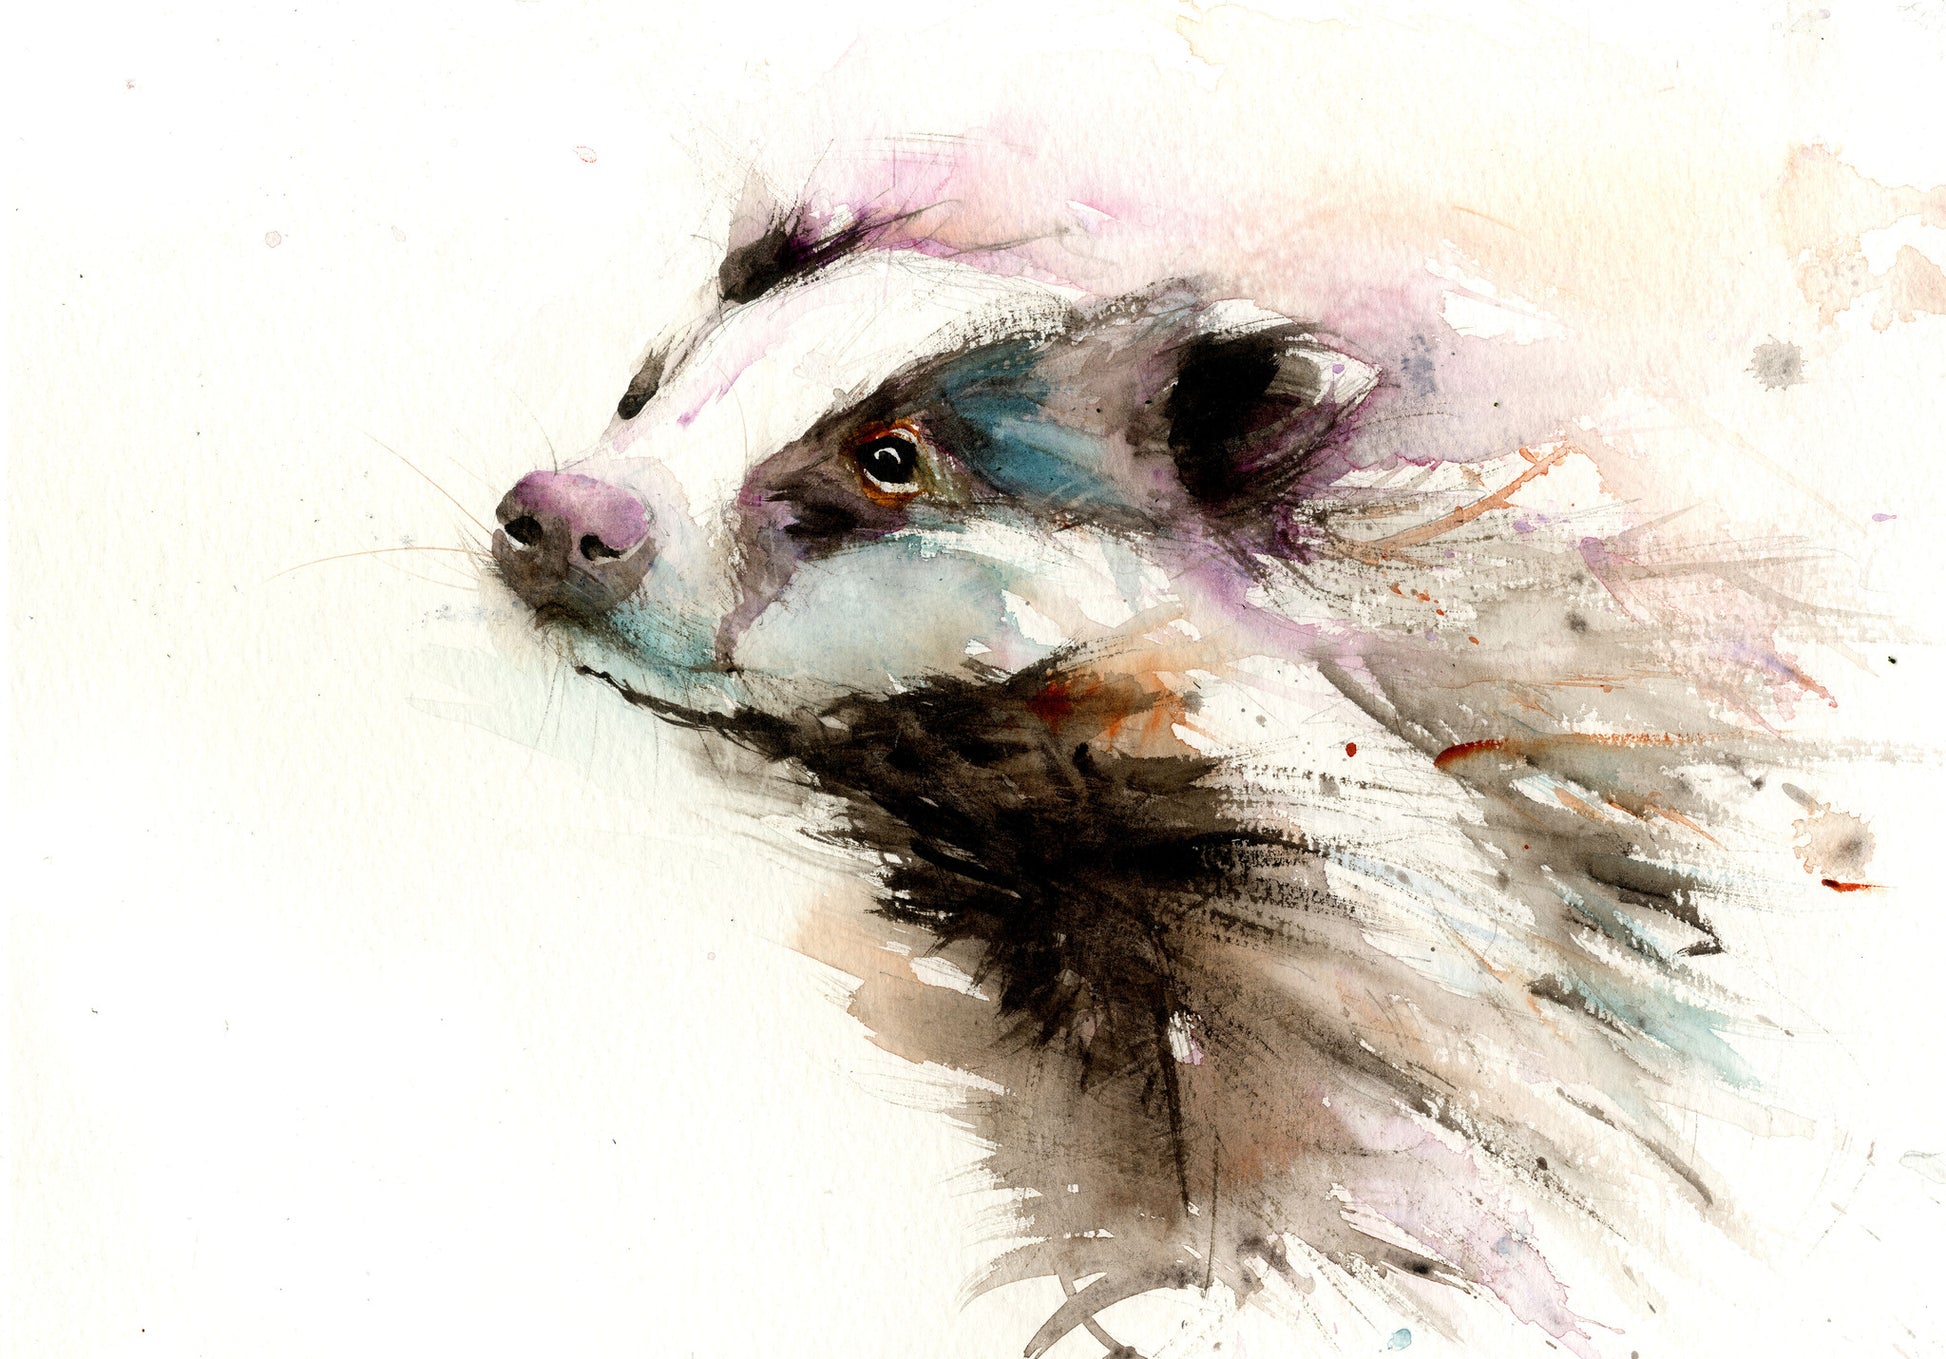 signed limited edition print - Badger - Jen Buckley Art limited edition animal art prints